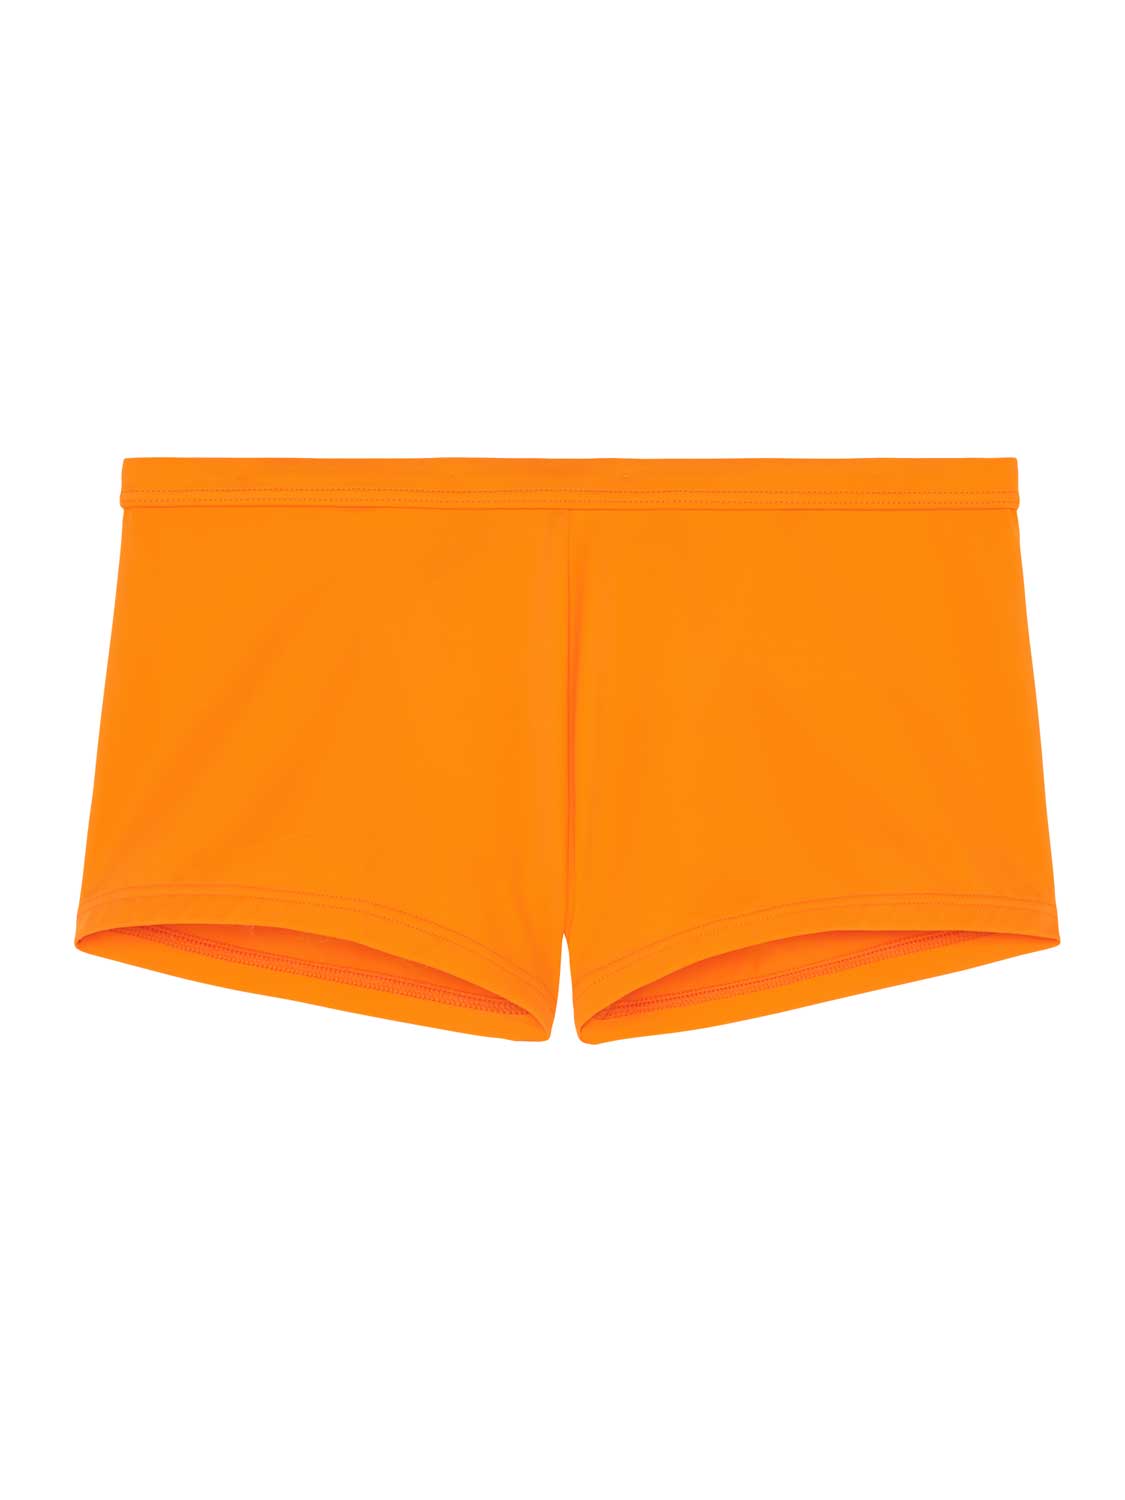 HOM - Swim Shorts - Sea Life - oranje